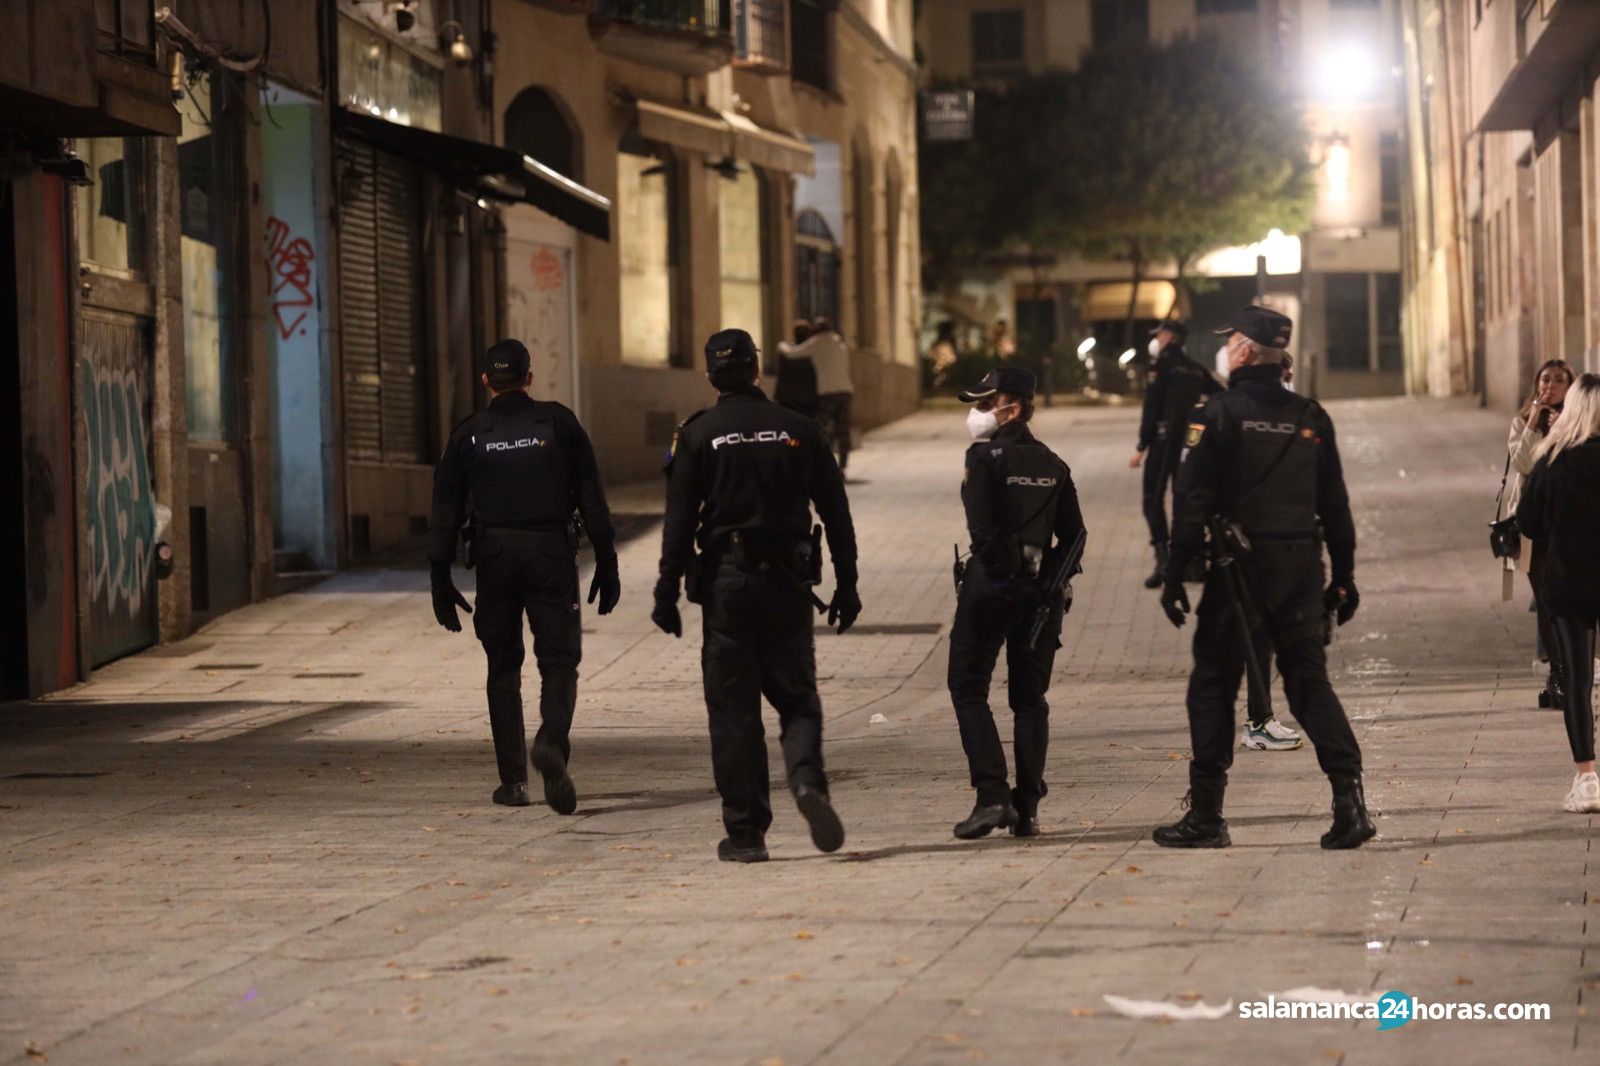  Policia nacional noche confinamiento Image 2020 10 18 at 00.03.34 